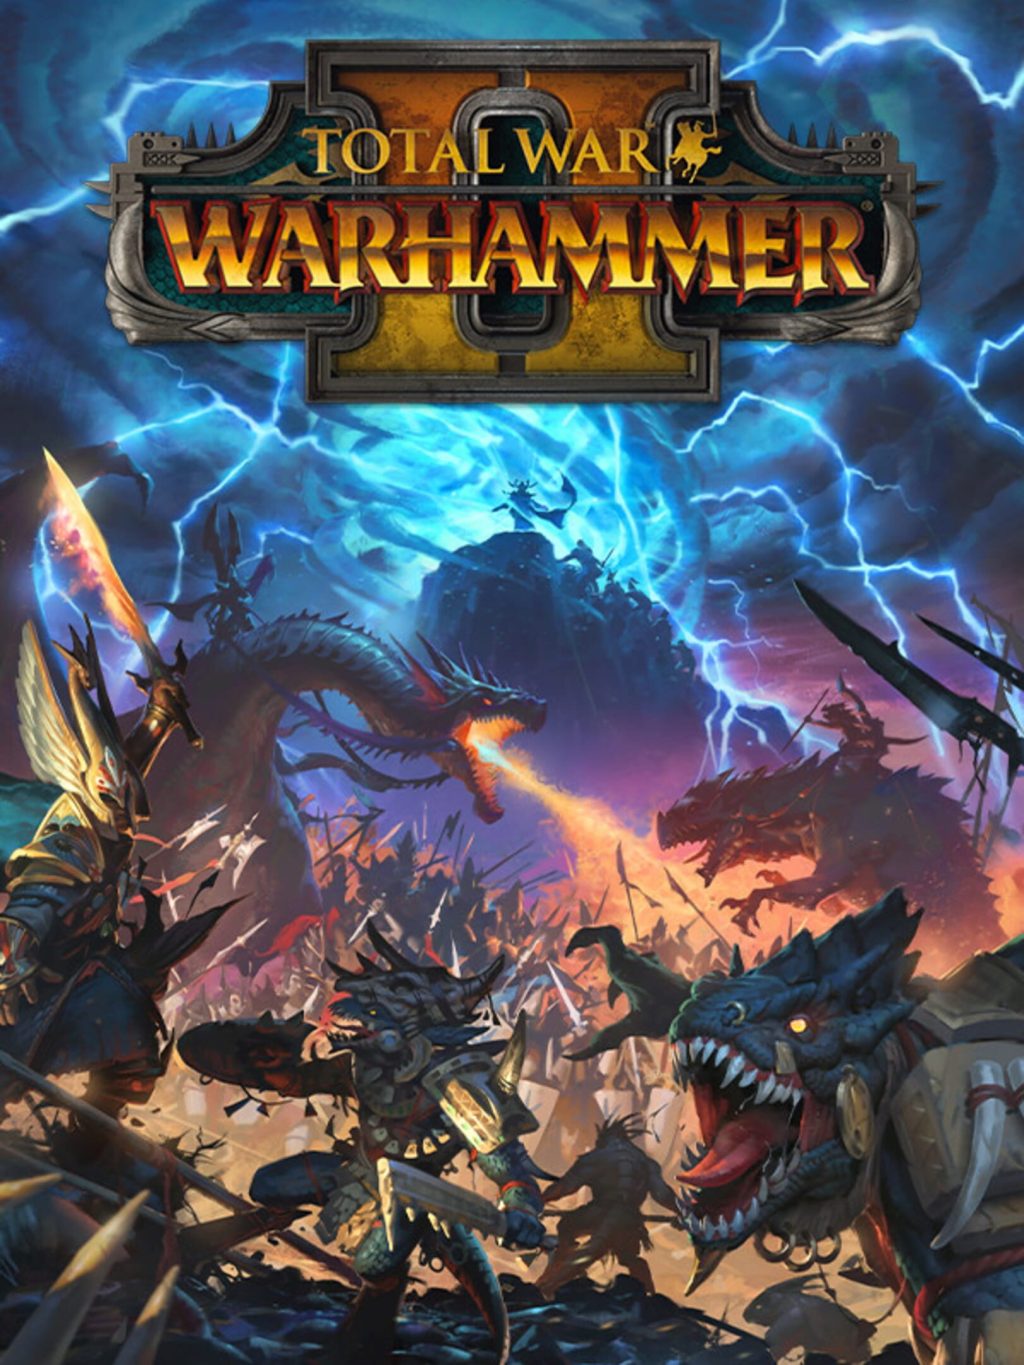 Total War: Warhammer II News, Guides, Walkthrough, Screenshots, and Reviews  - GameRevolution